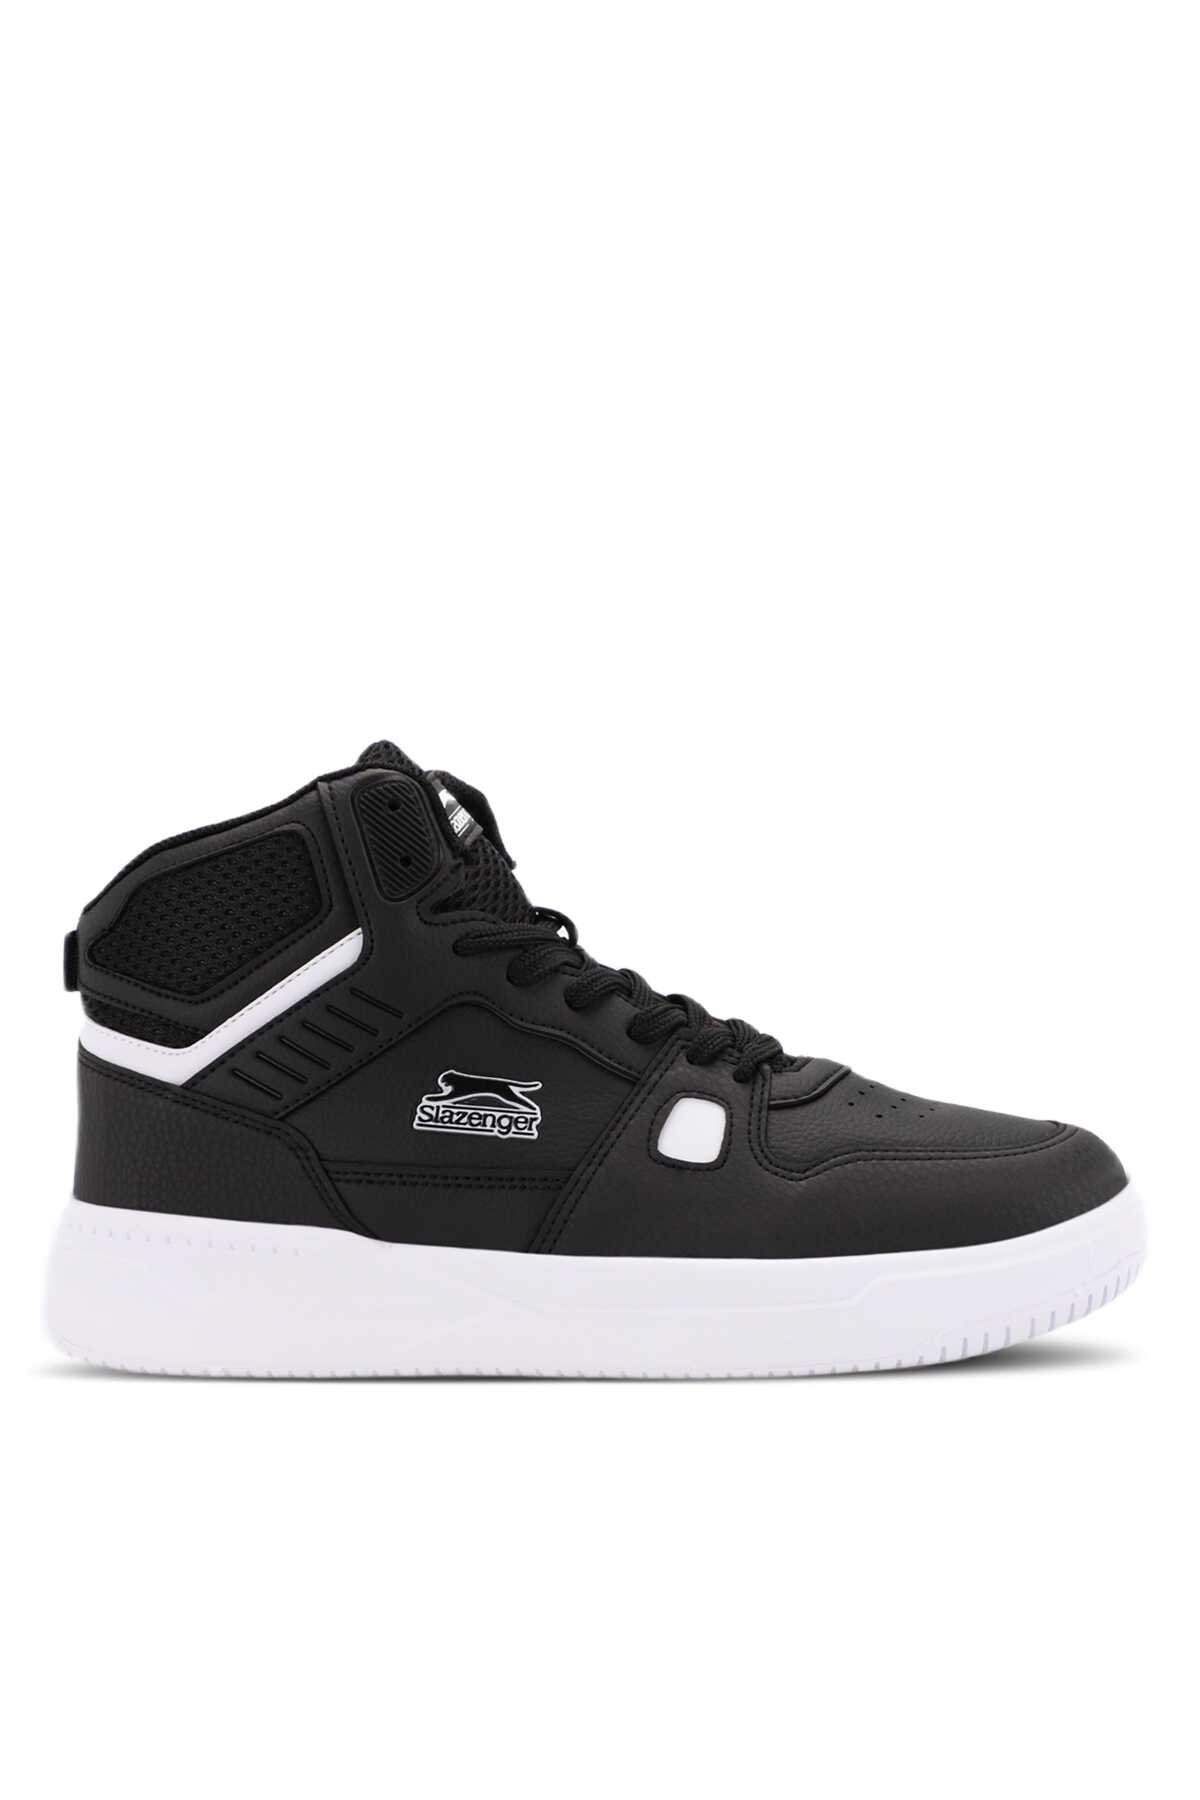 Slazenger - Slazenger PAN Sneaker Erkek Ayakkabı Siyah / Beyaz